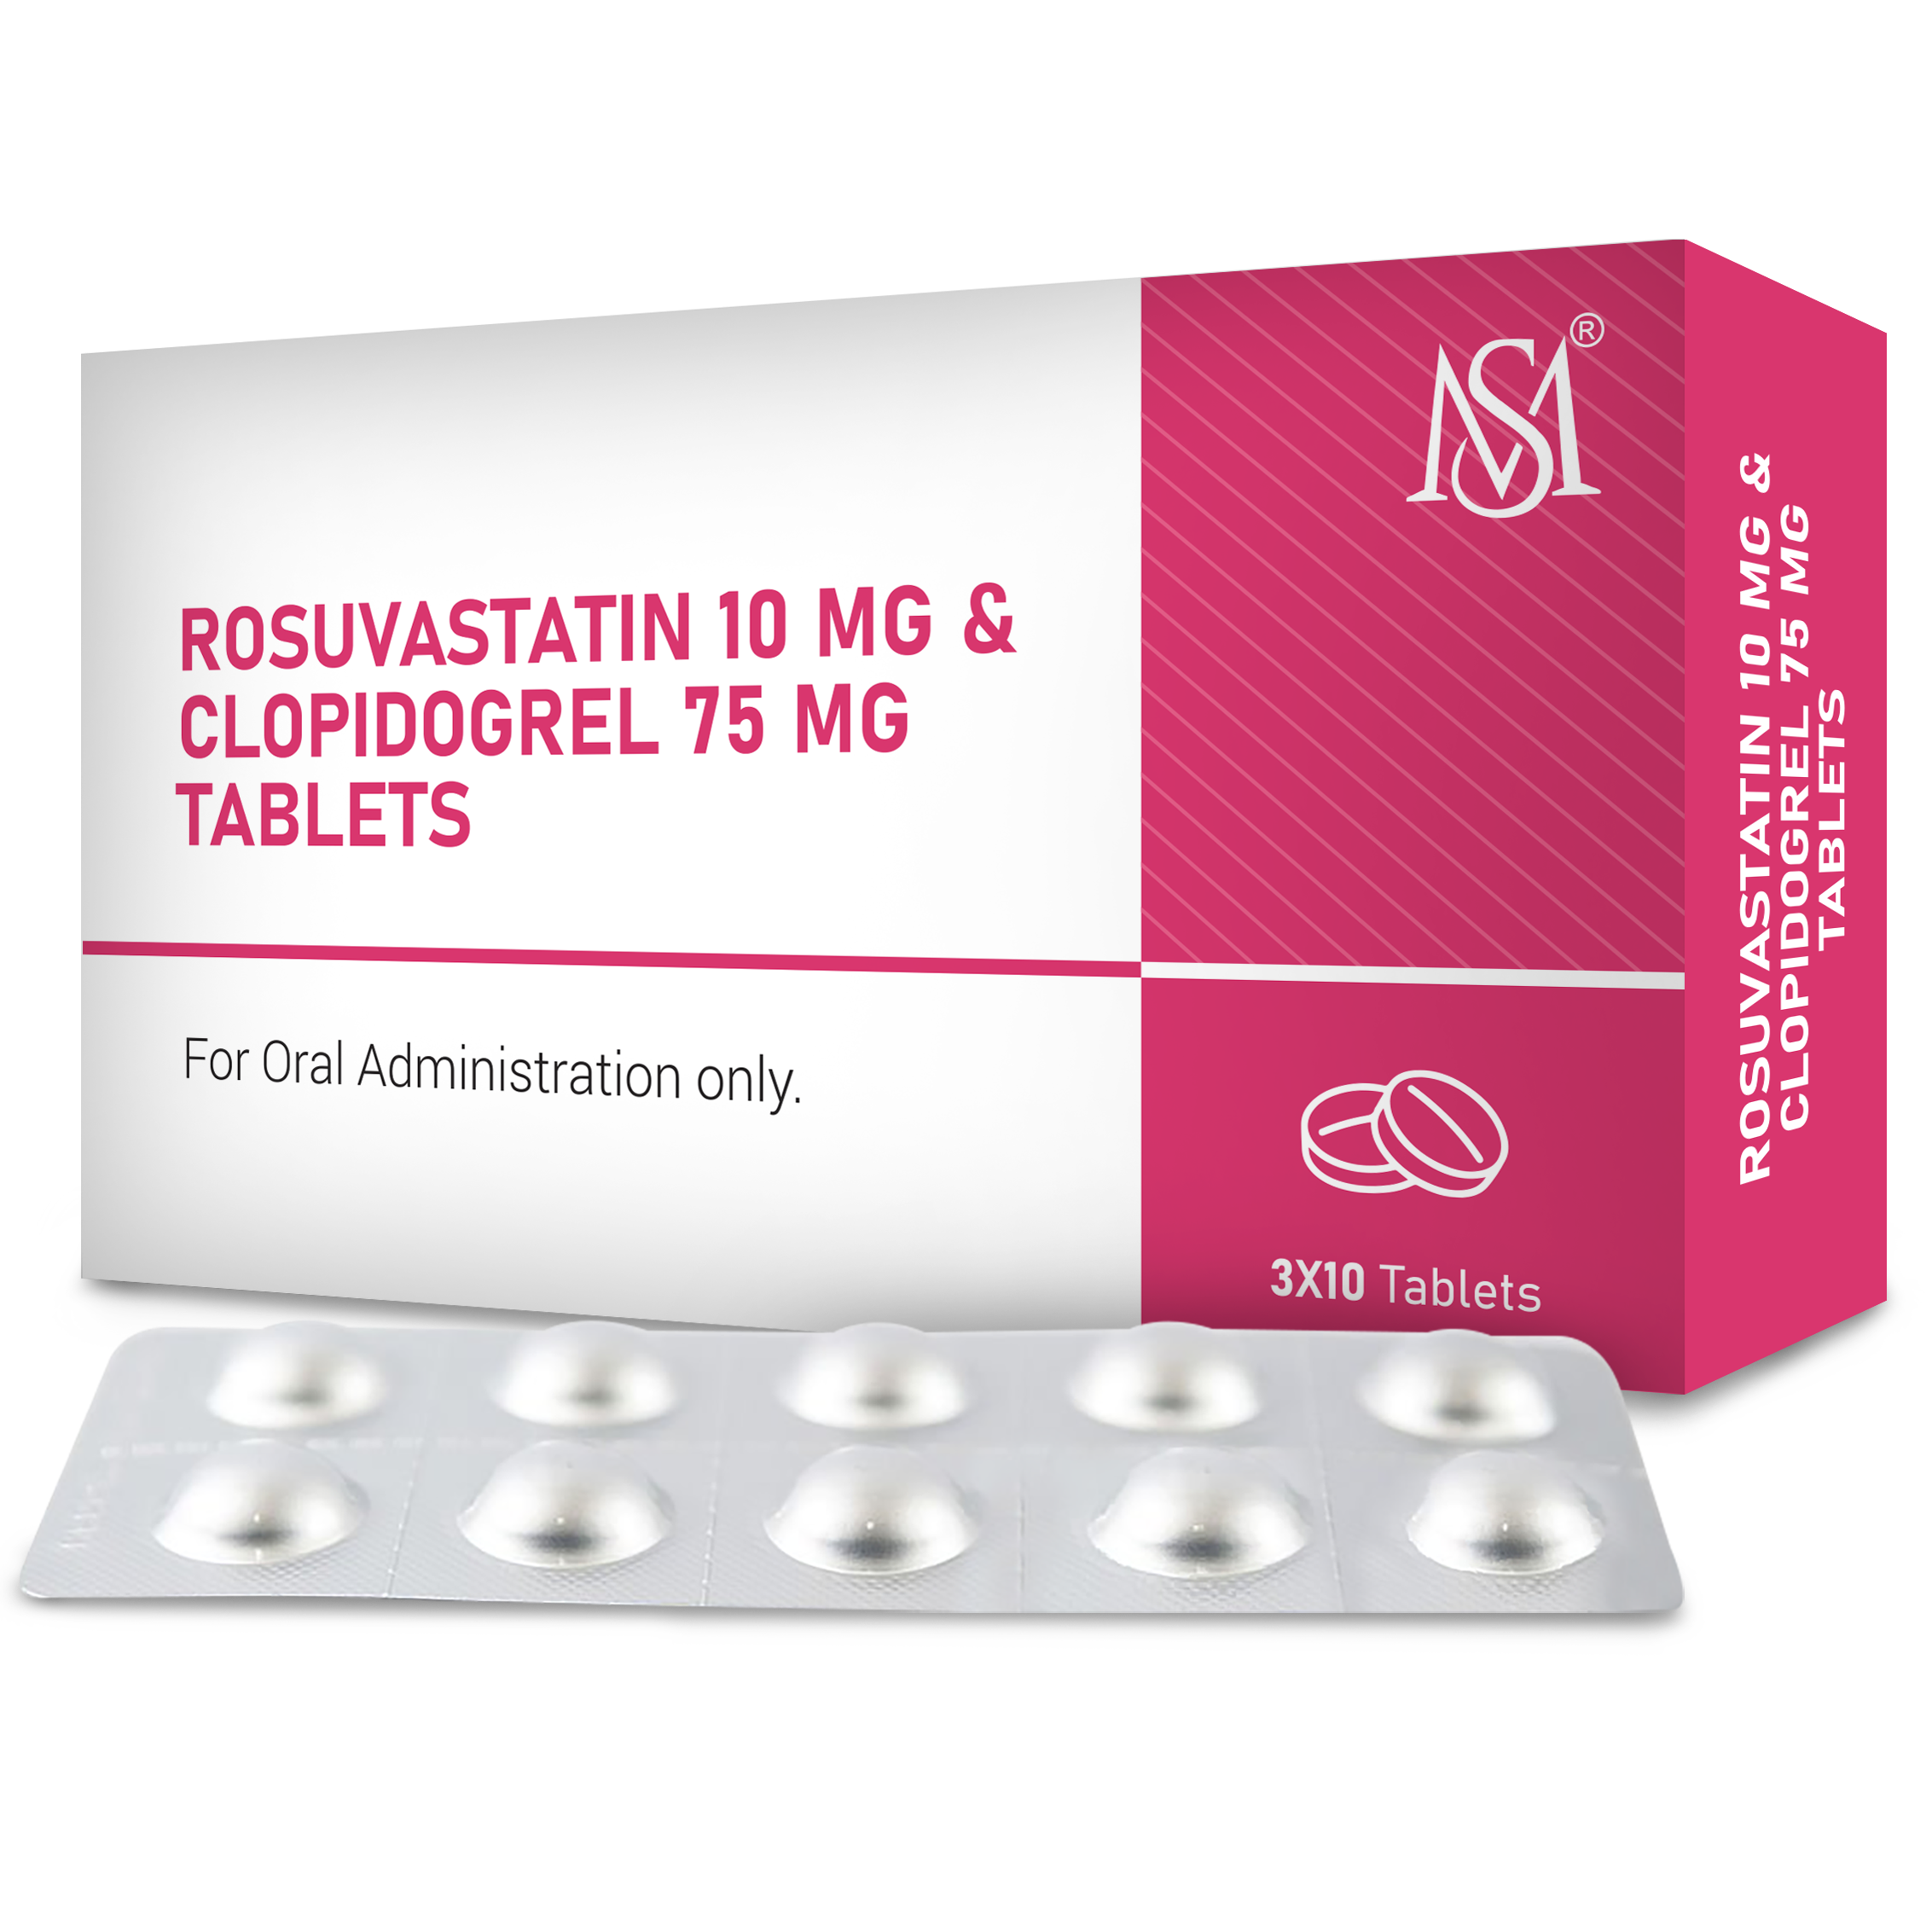 Rosuvastatin 10 mg & Clopidogrel 75 mg Tablets